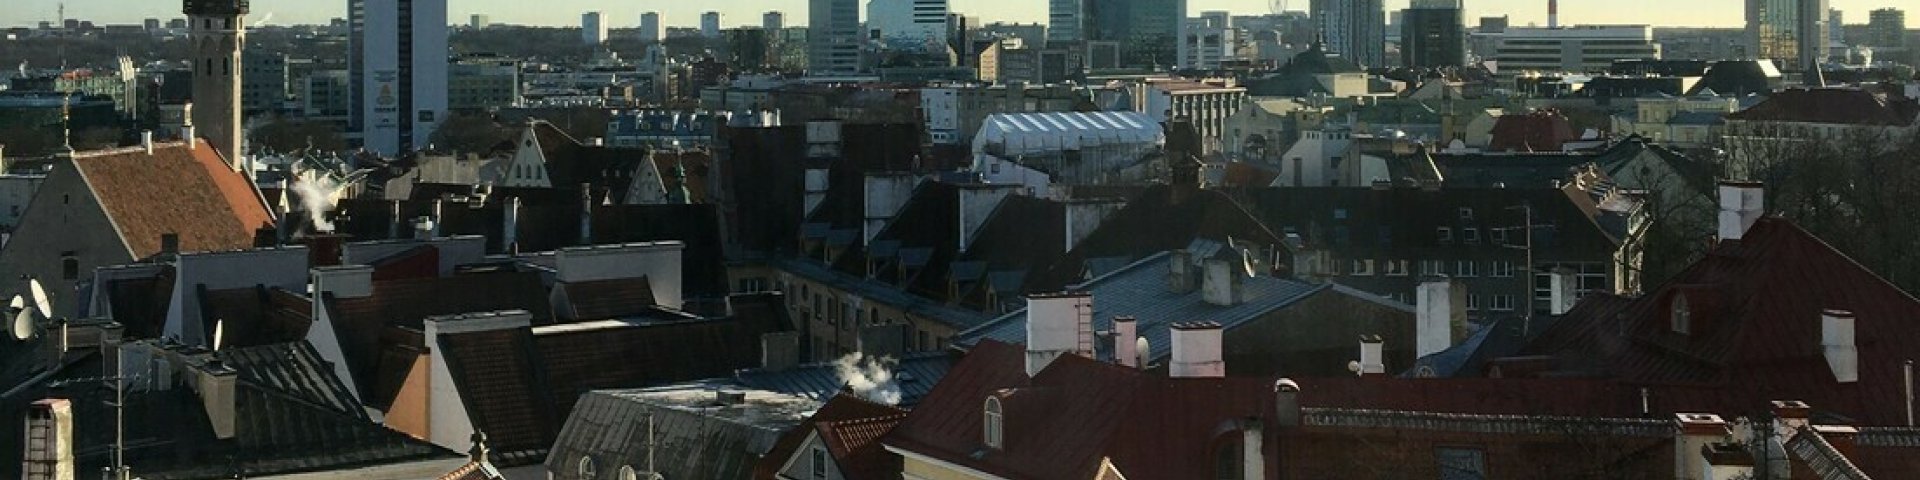 Tallinna linna panoraam